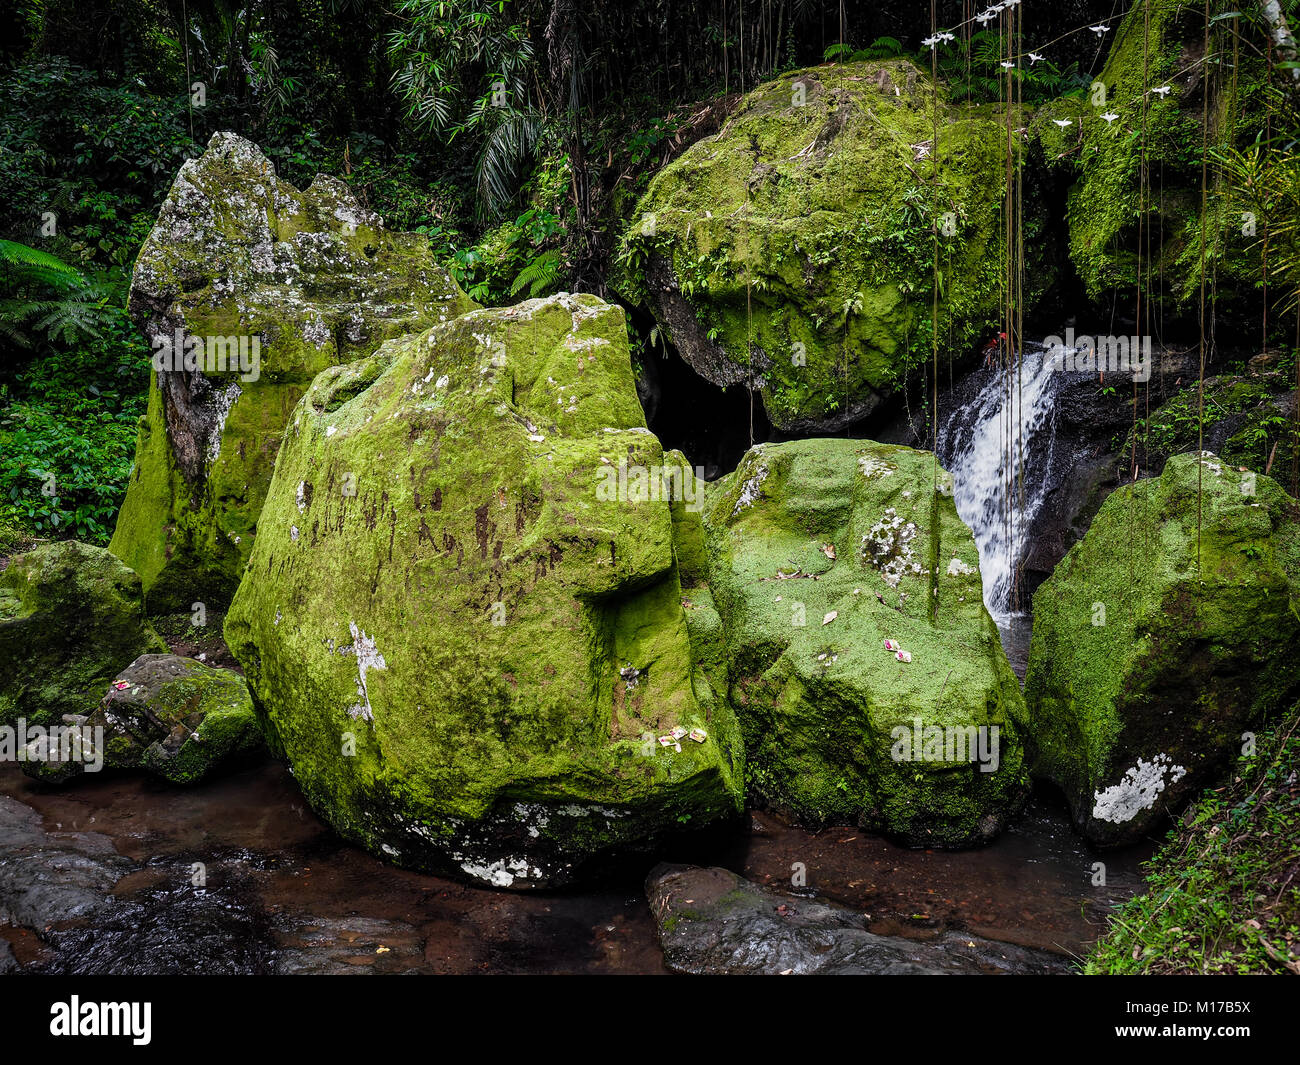 Los parches de musgo verde en las rocas grandes. Cubiertas de musgo piedras gigantes en un antiguo bosque tropical. Concepto de armonía. El equilibrio de la naturaleza. Tranquilidad Foto de stock